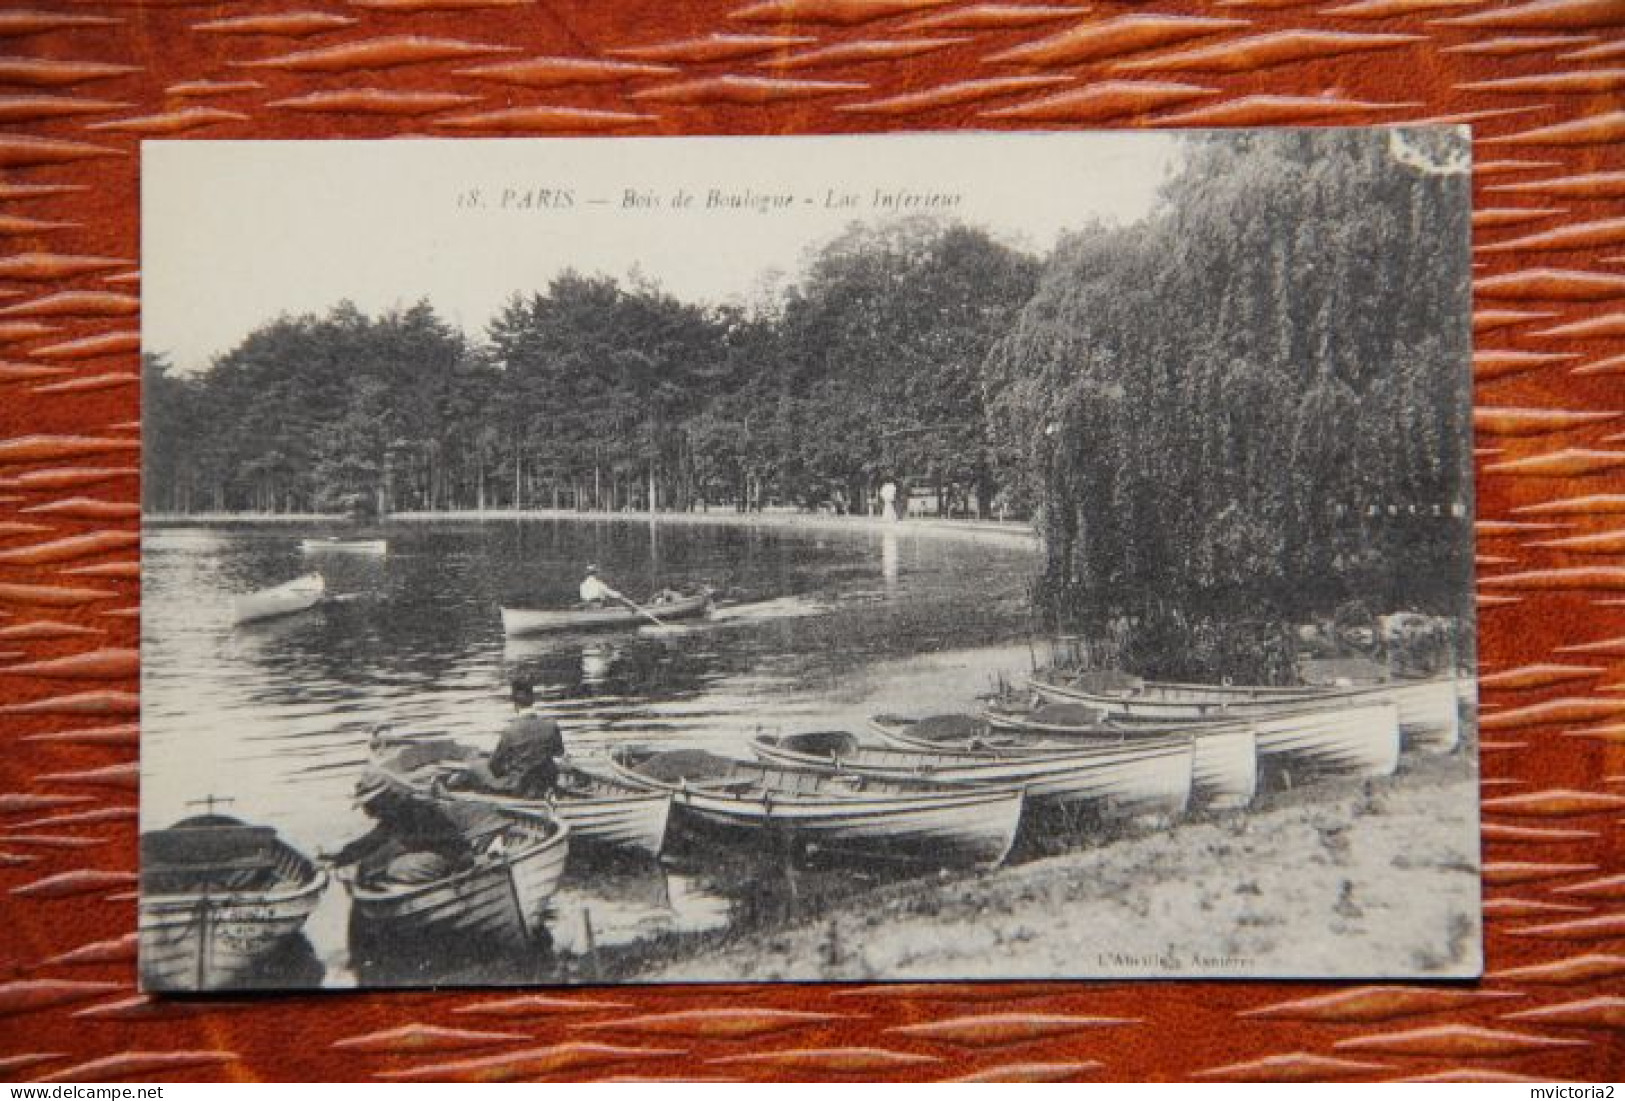 75 - PARIS : Bois De BOULOGNE, Lac Inférieur - Parcs, Jardins